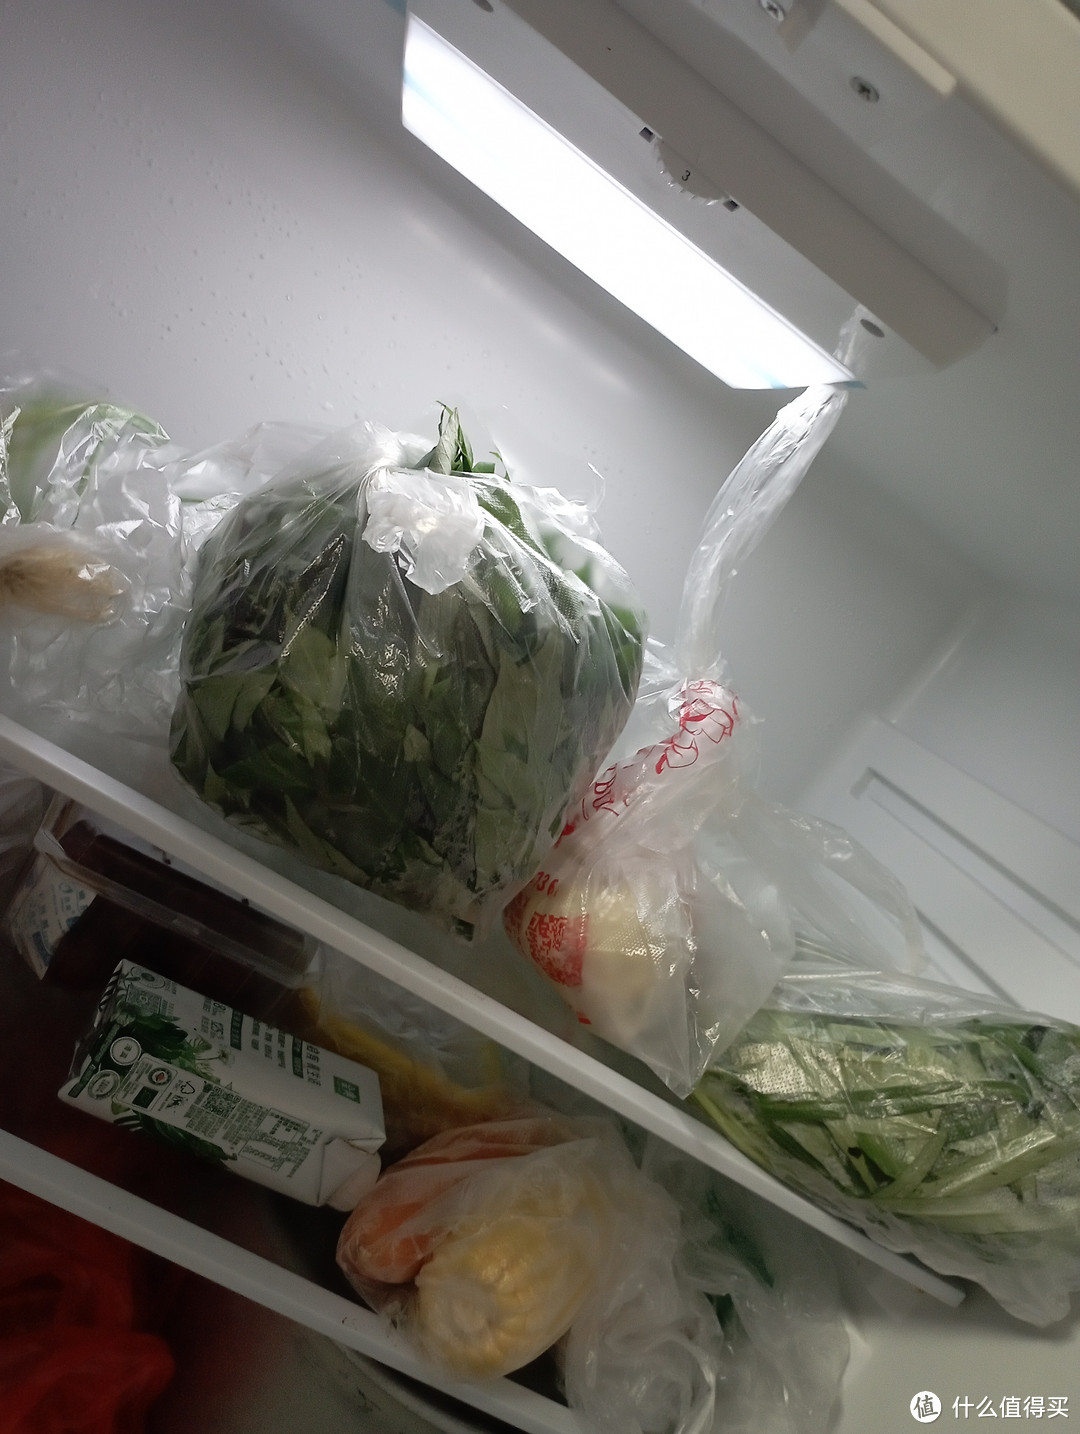 以下是关于家用双开门冰箱的分享